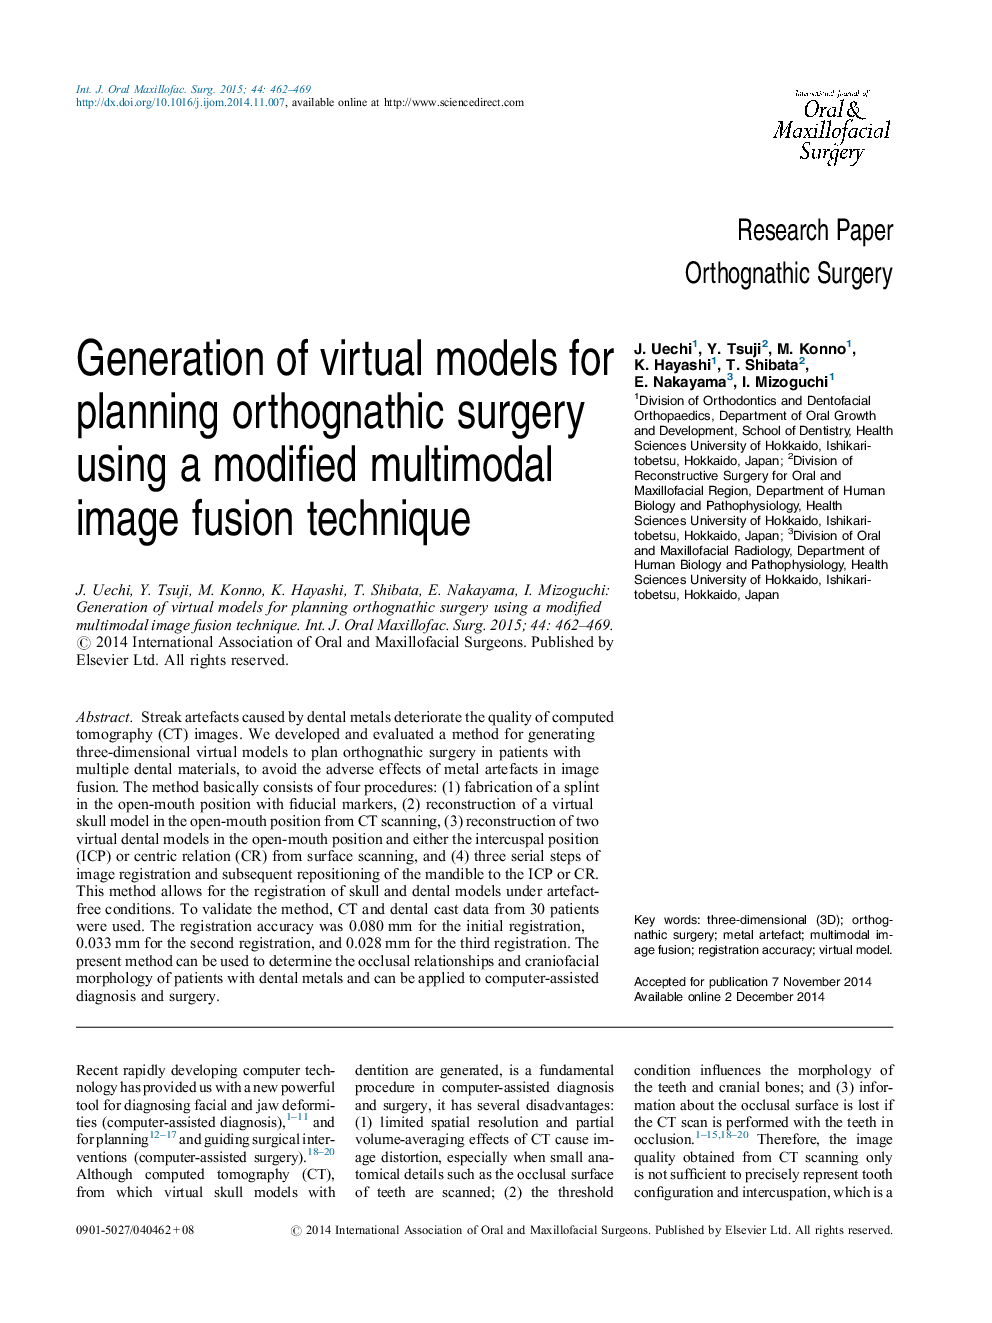 مقاله پژوهشی جراحی ارگانوژنیک ایجاد مدل های مجازی برای برنامه ریزی جراحی ارتوگناتیک با استفاده از تکنیک تلفیقی تصویر اصلاح شده چندمتغیره 